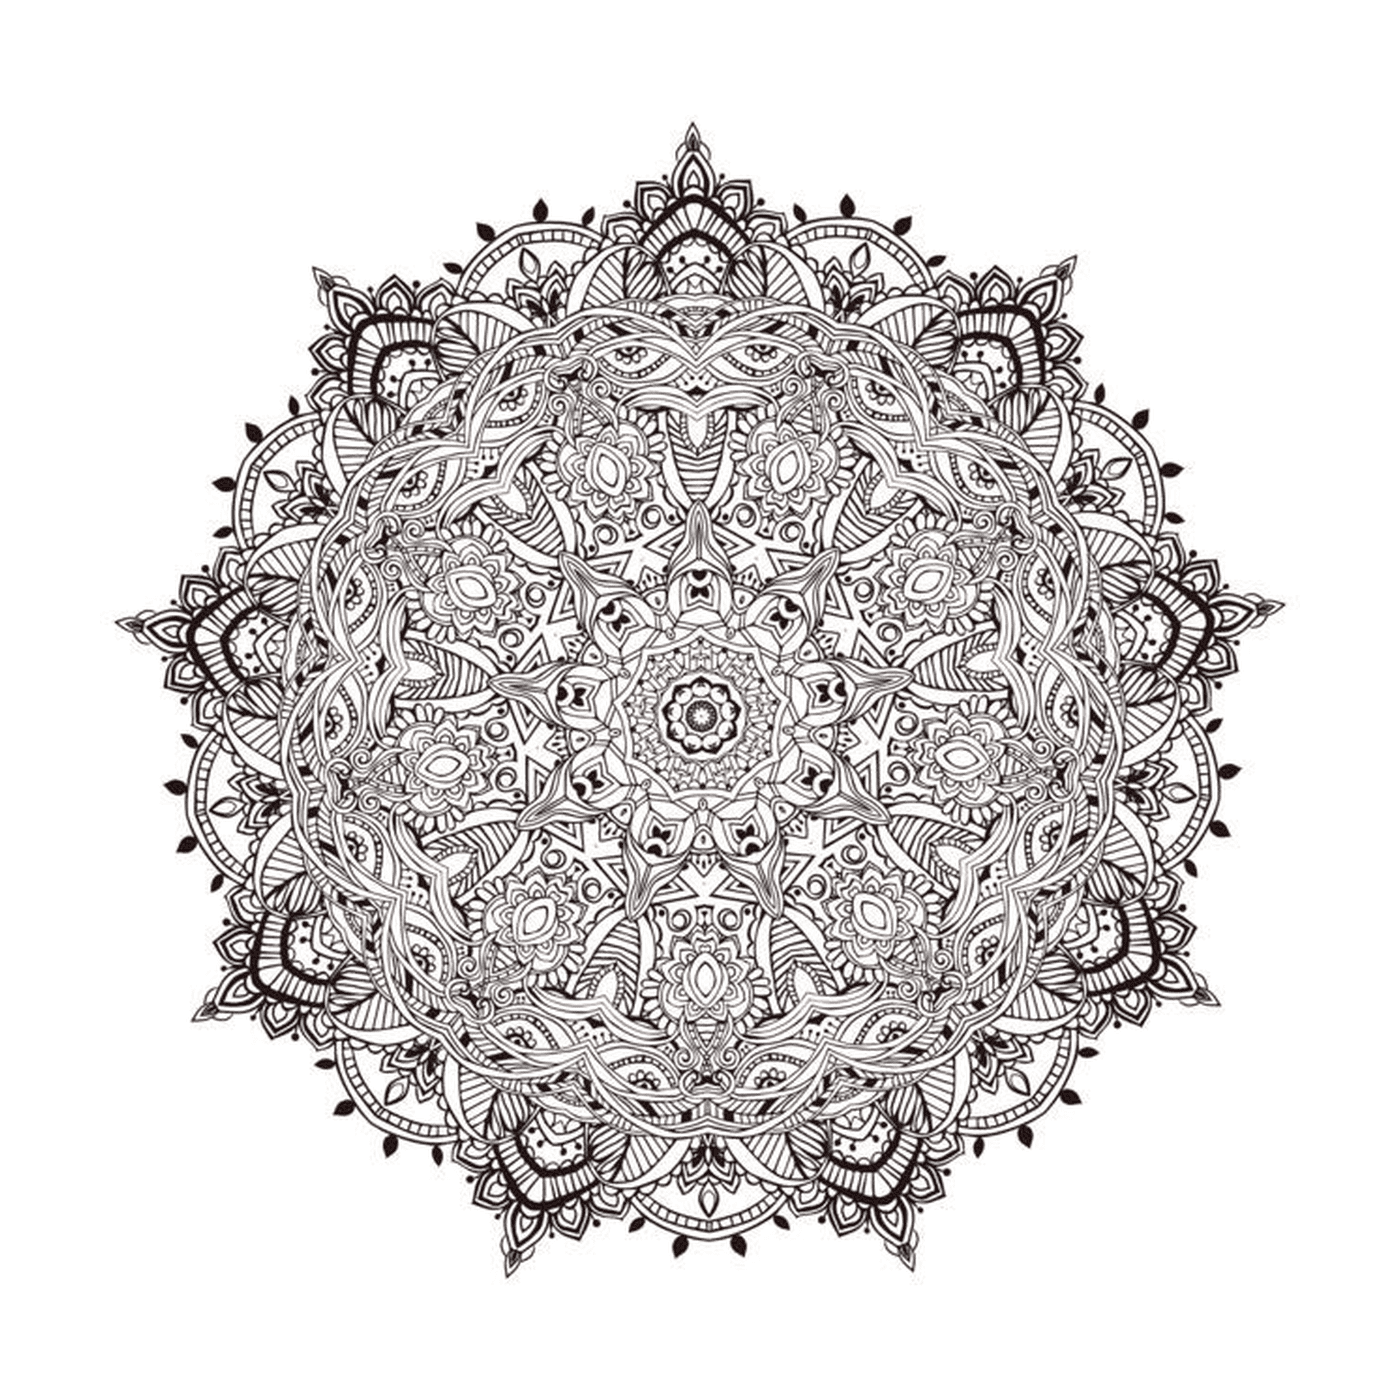   Mandala détaillé avec motif floral 